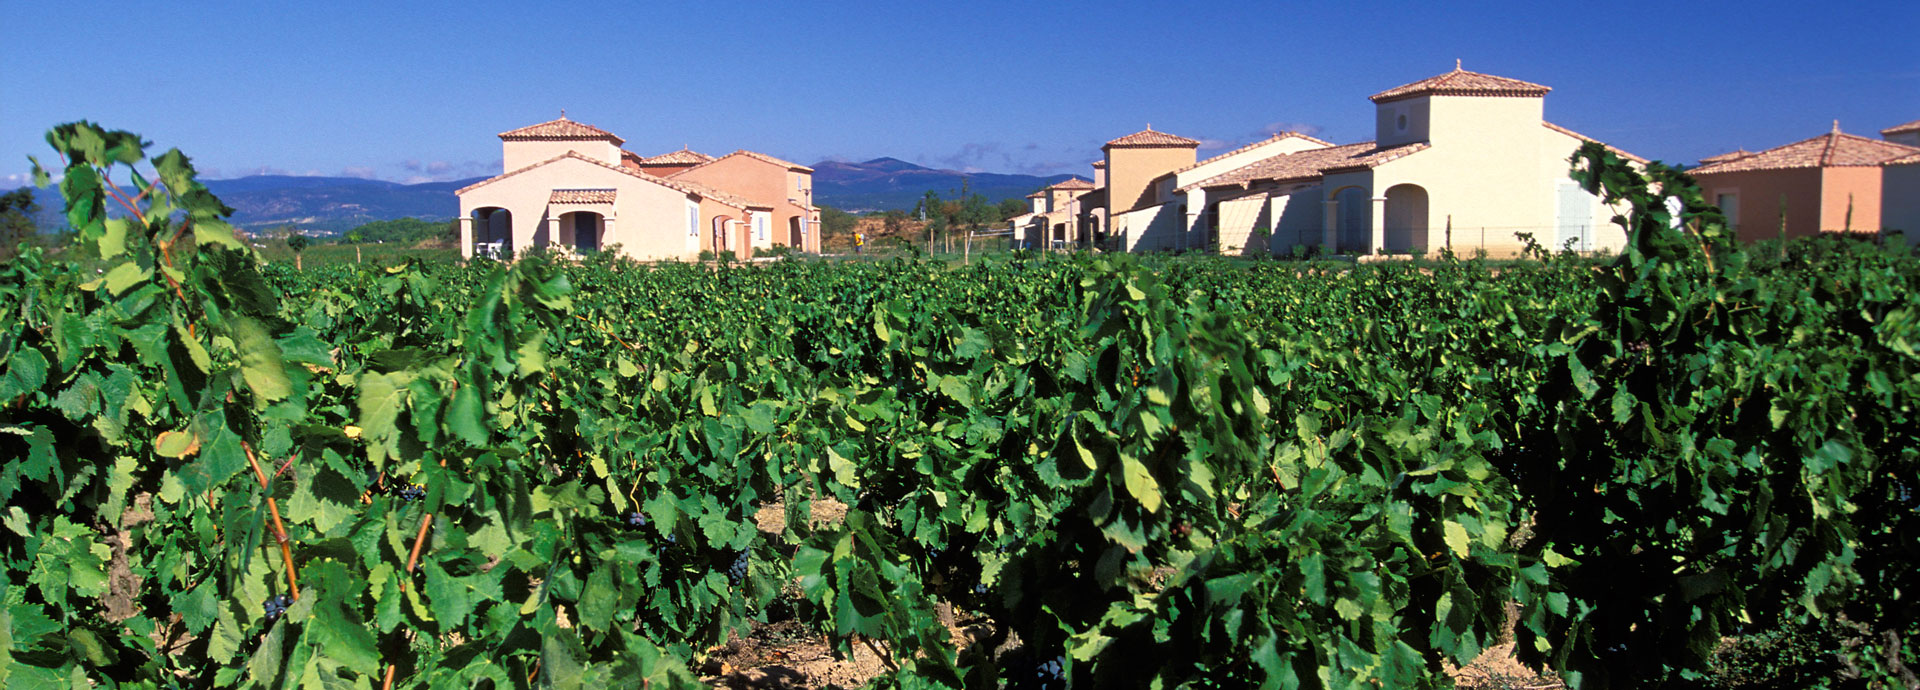 Homps in Languedoc-Roussillon al centro del paese cataro: affitto case vacanza nell'Aude